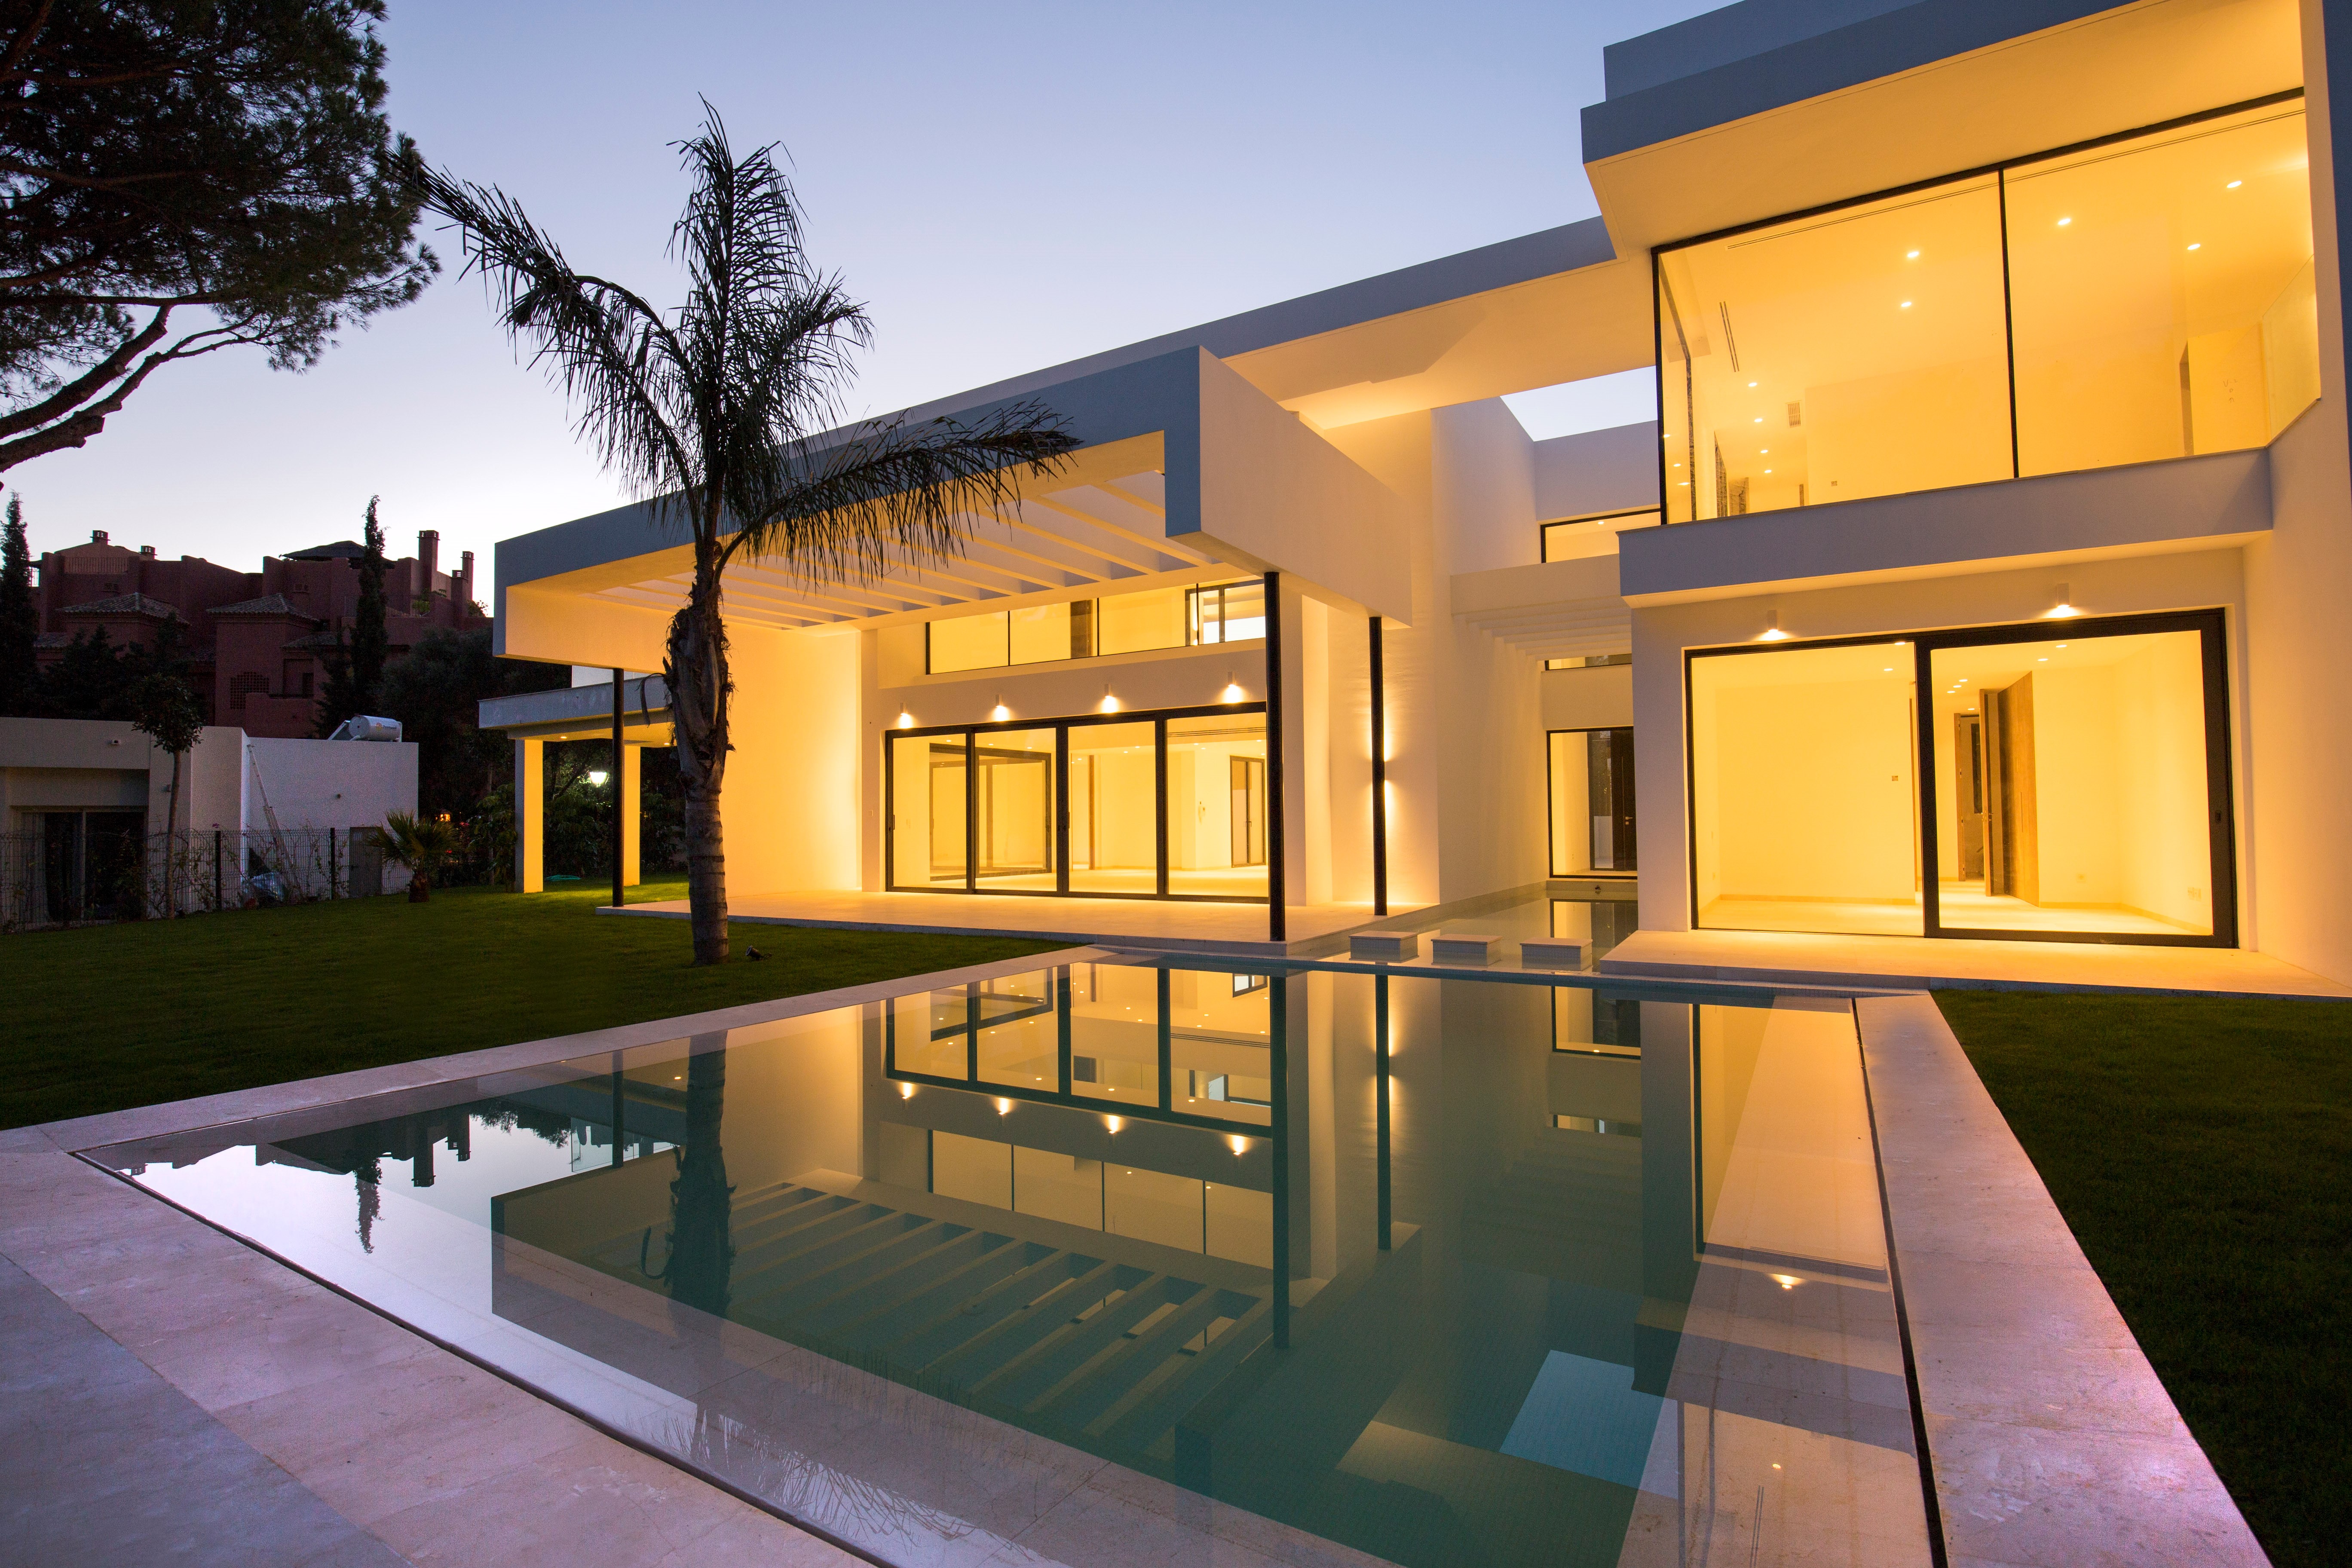 Luxury Villa House